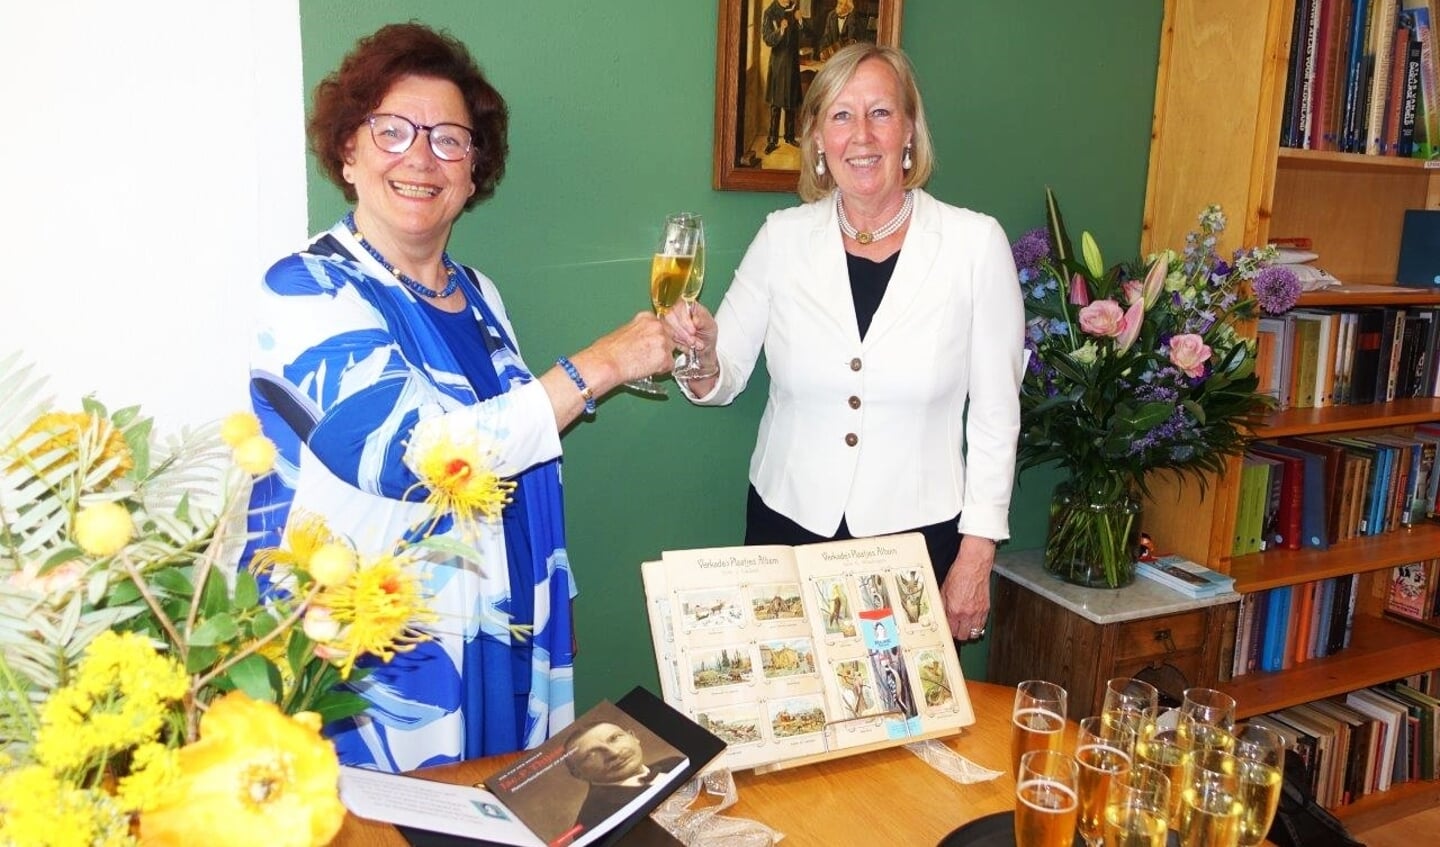 Wethouder Astrid van Eekelen (r) en Marianne Knijnenburg proosten op een mooie toekomst voor Goede Doelen Boekenhuis Marianne (foto:Ap de Heus).